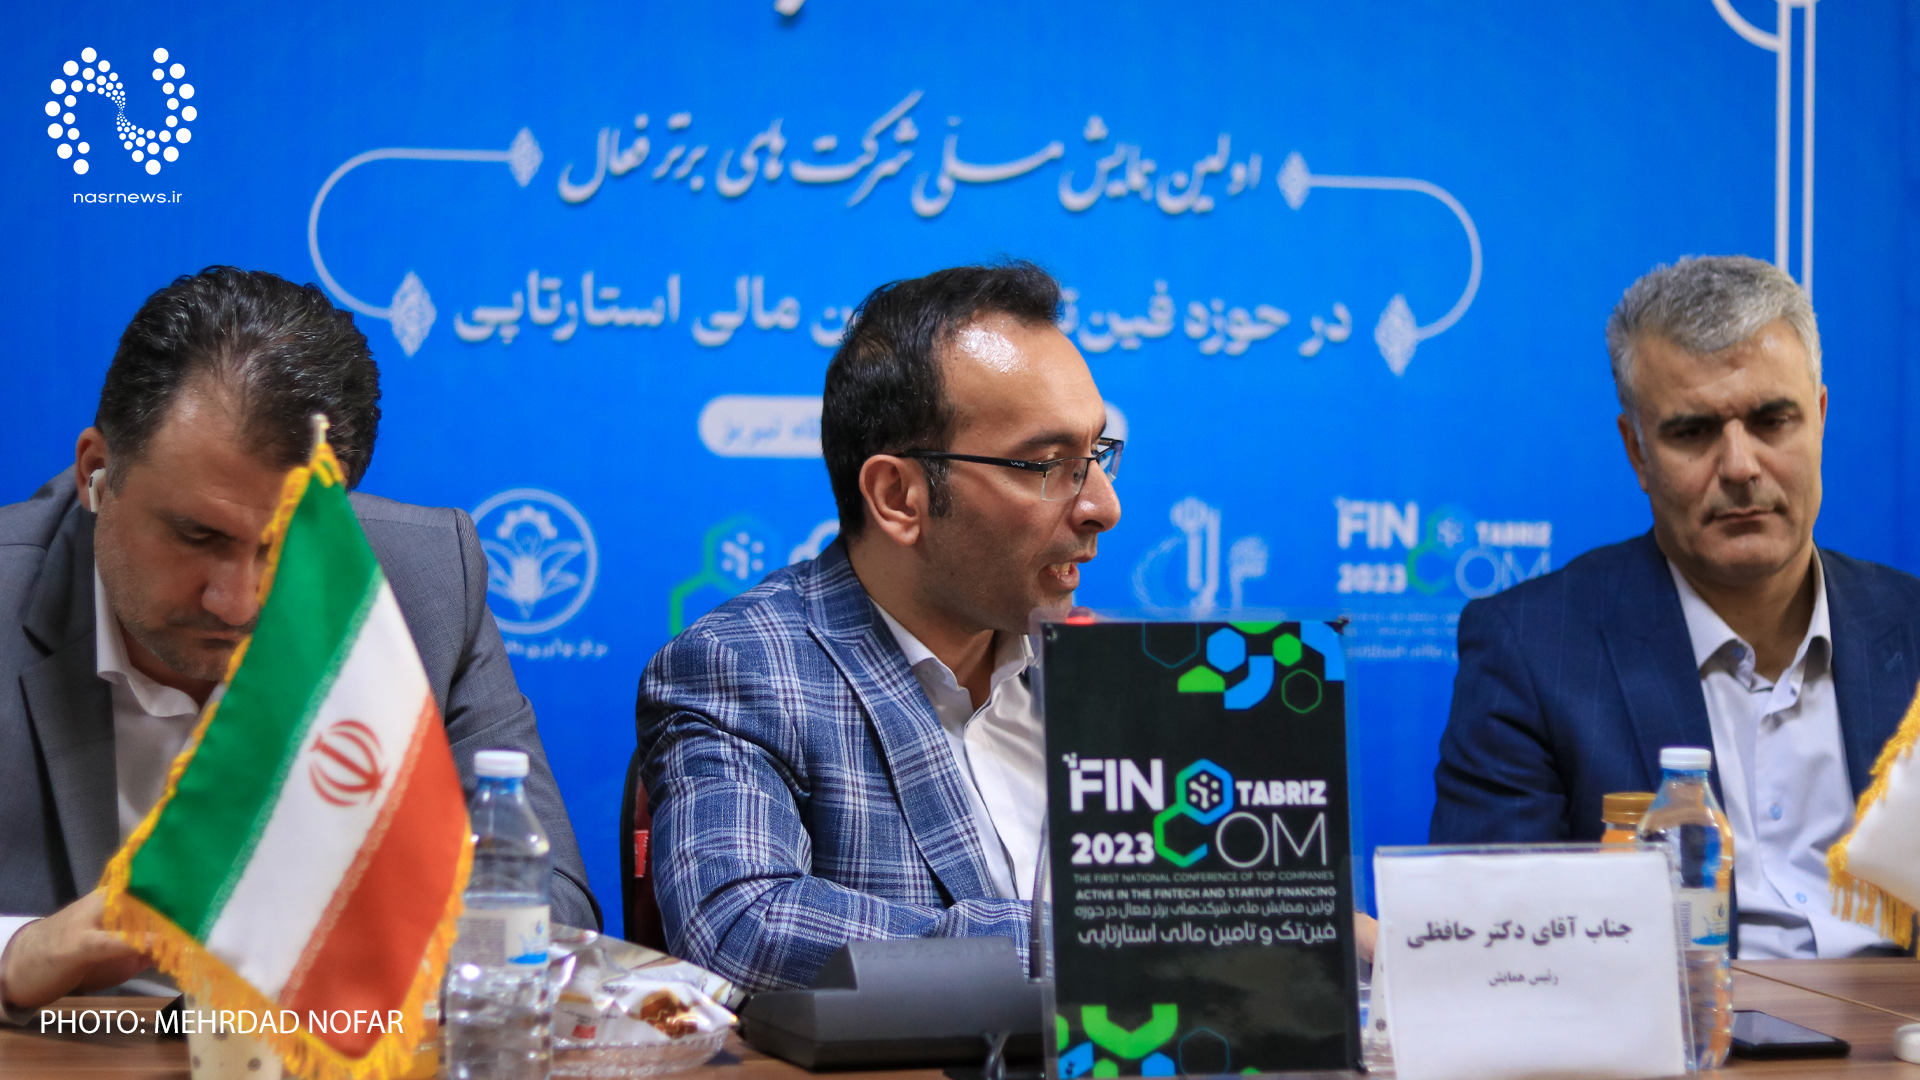 تصاویر | نشست خبری اولین همایش فینوکام ۲۰۲۳ در تبریز